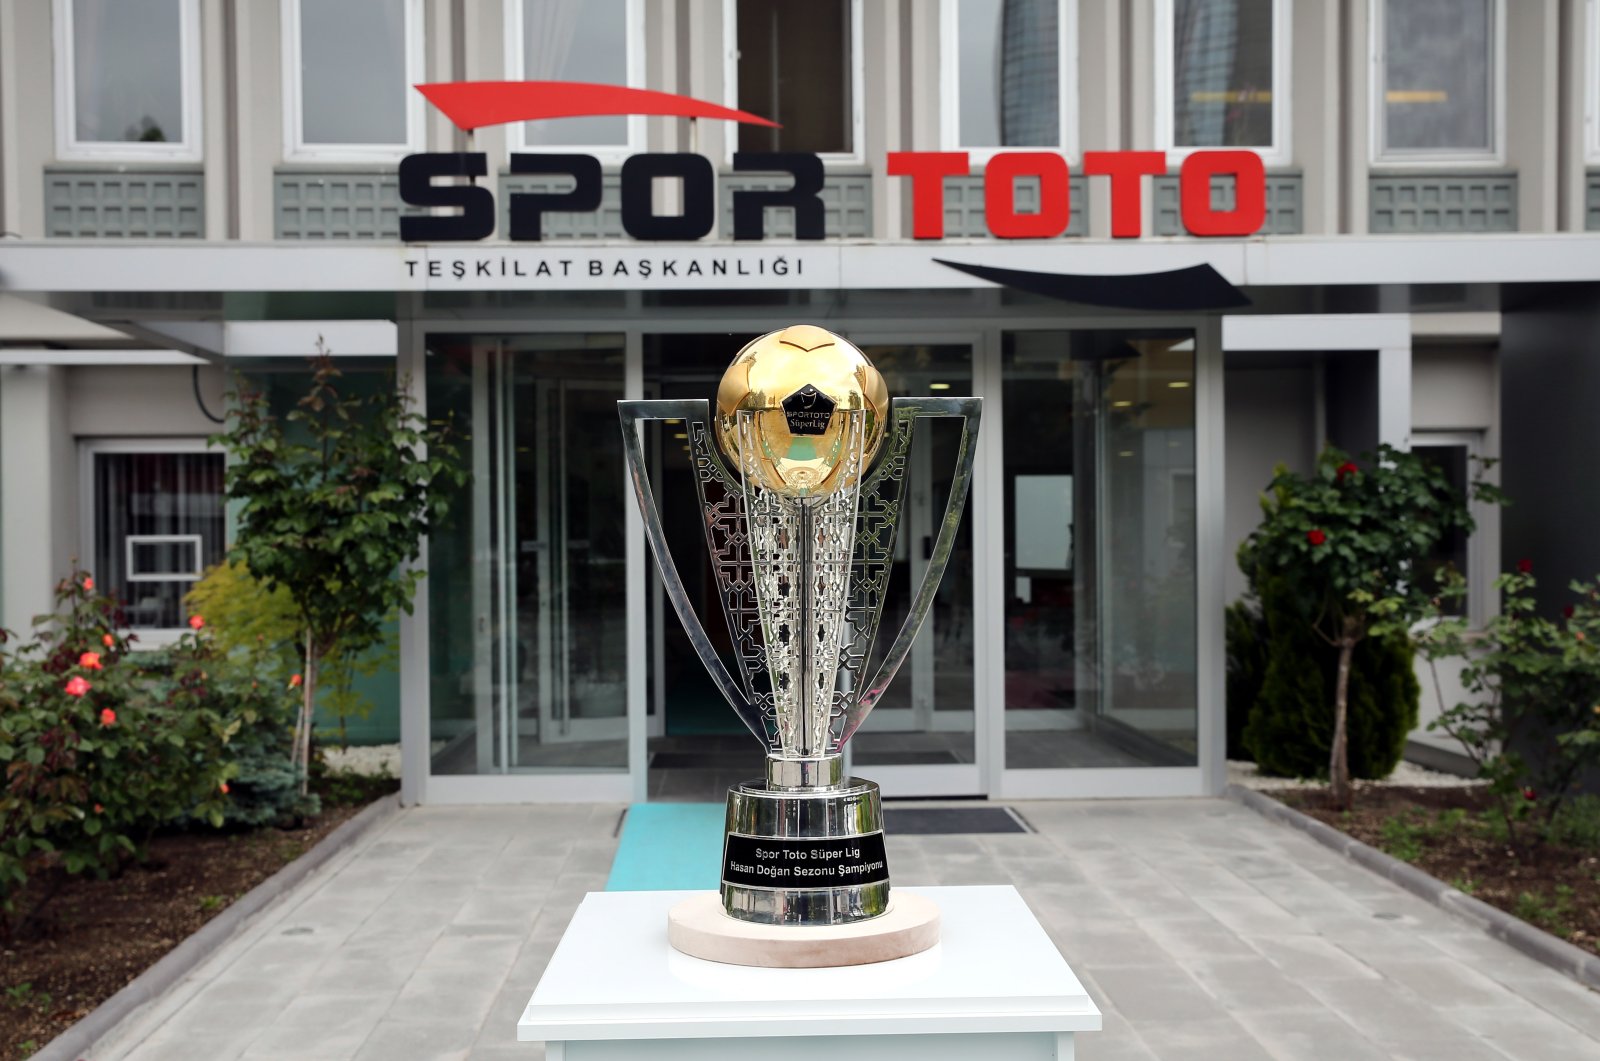 Süper Lig Turki musim 2022-23 ditetapkan untuk kick-off 5 Agustus